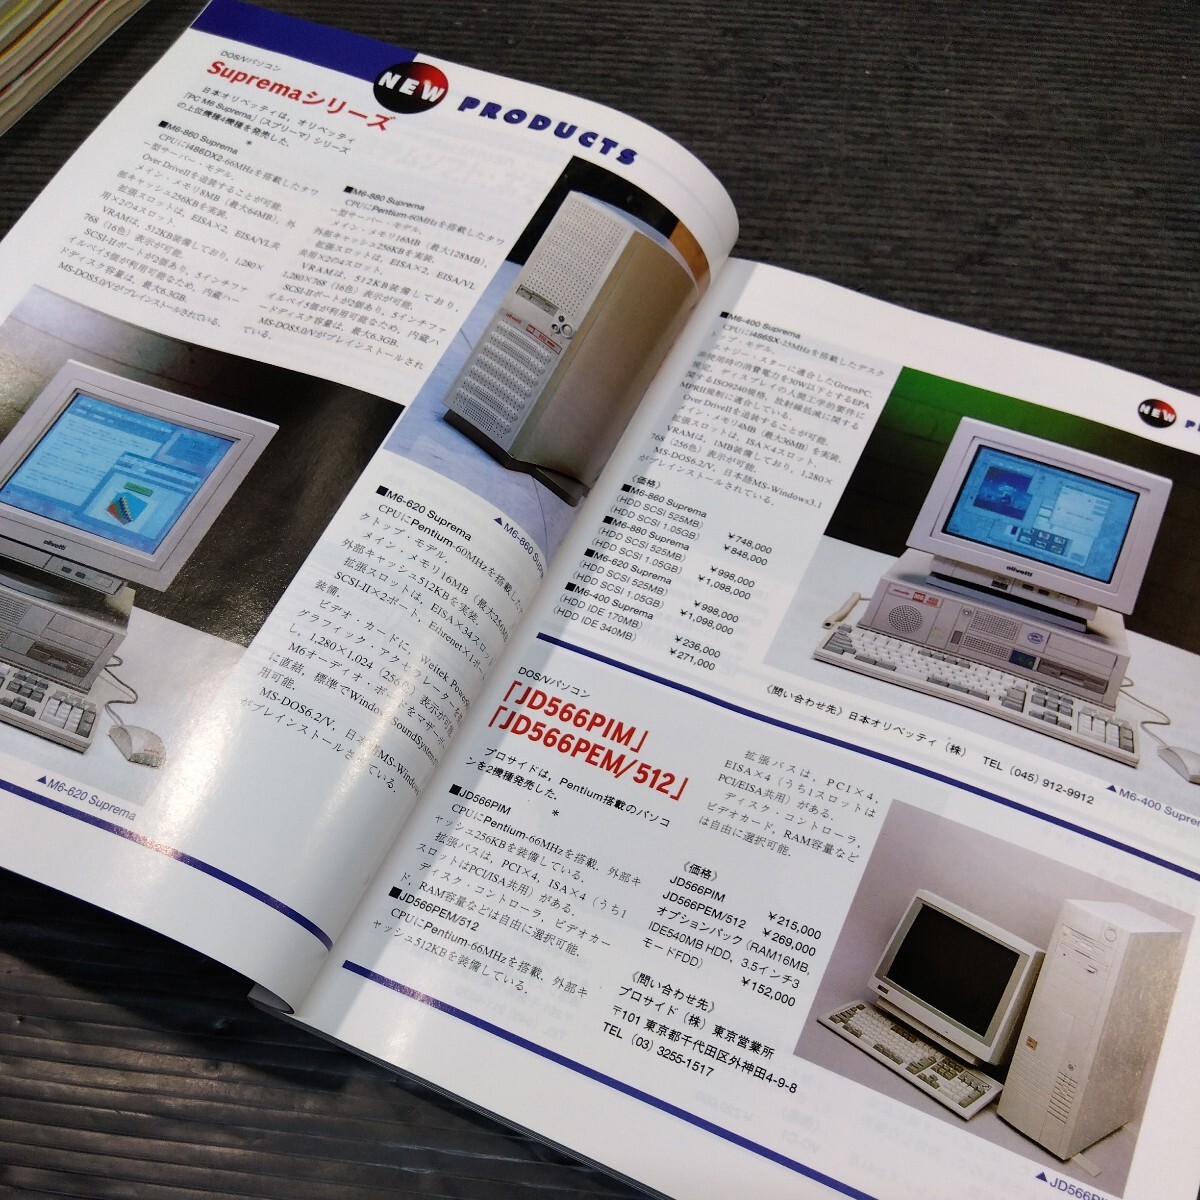 ② текущее состояние товар ..PC информация журнал ежемесячный I/O I o-1993 год 1994 год все 9 шт. инженерия фирма старинная книга старый журнал персональный компьютер компьютер игра программирование 